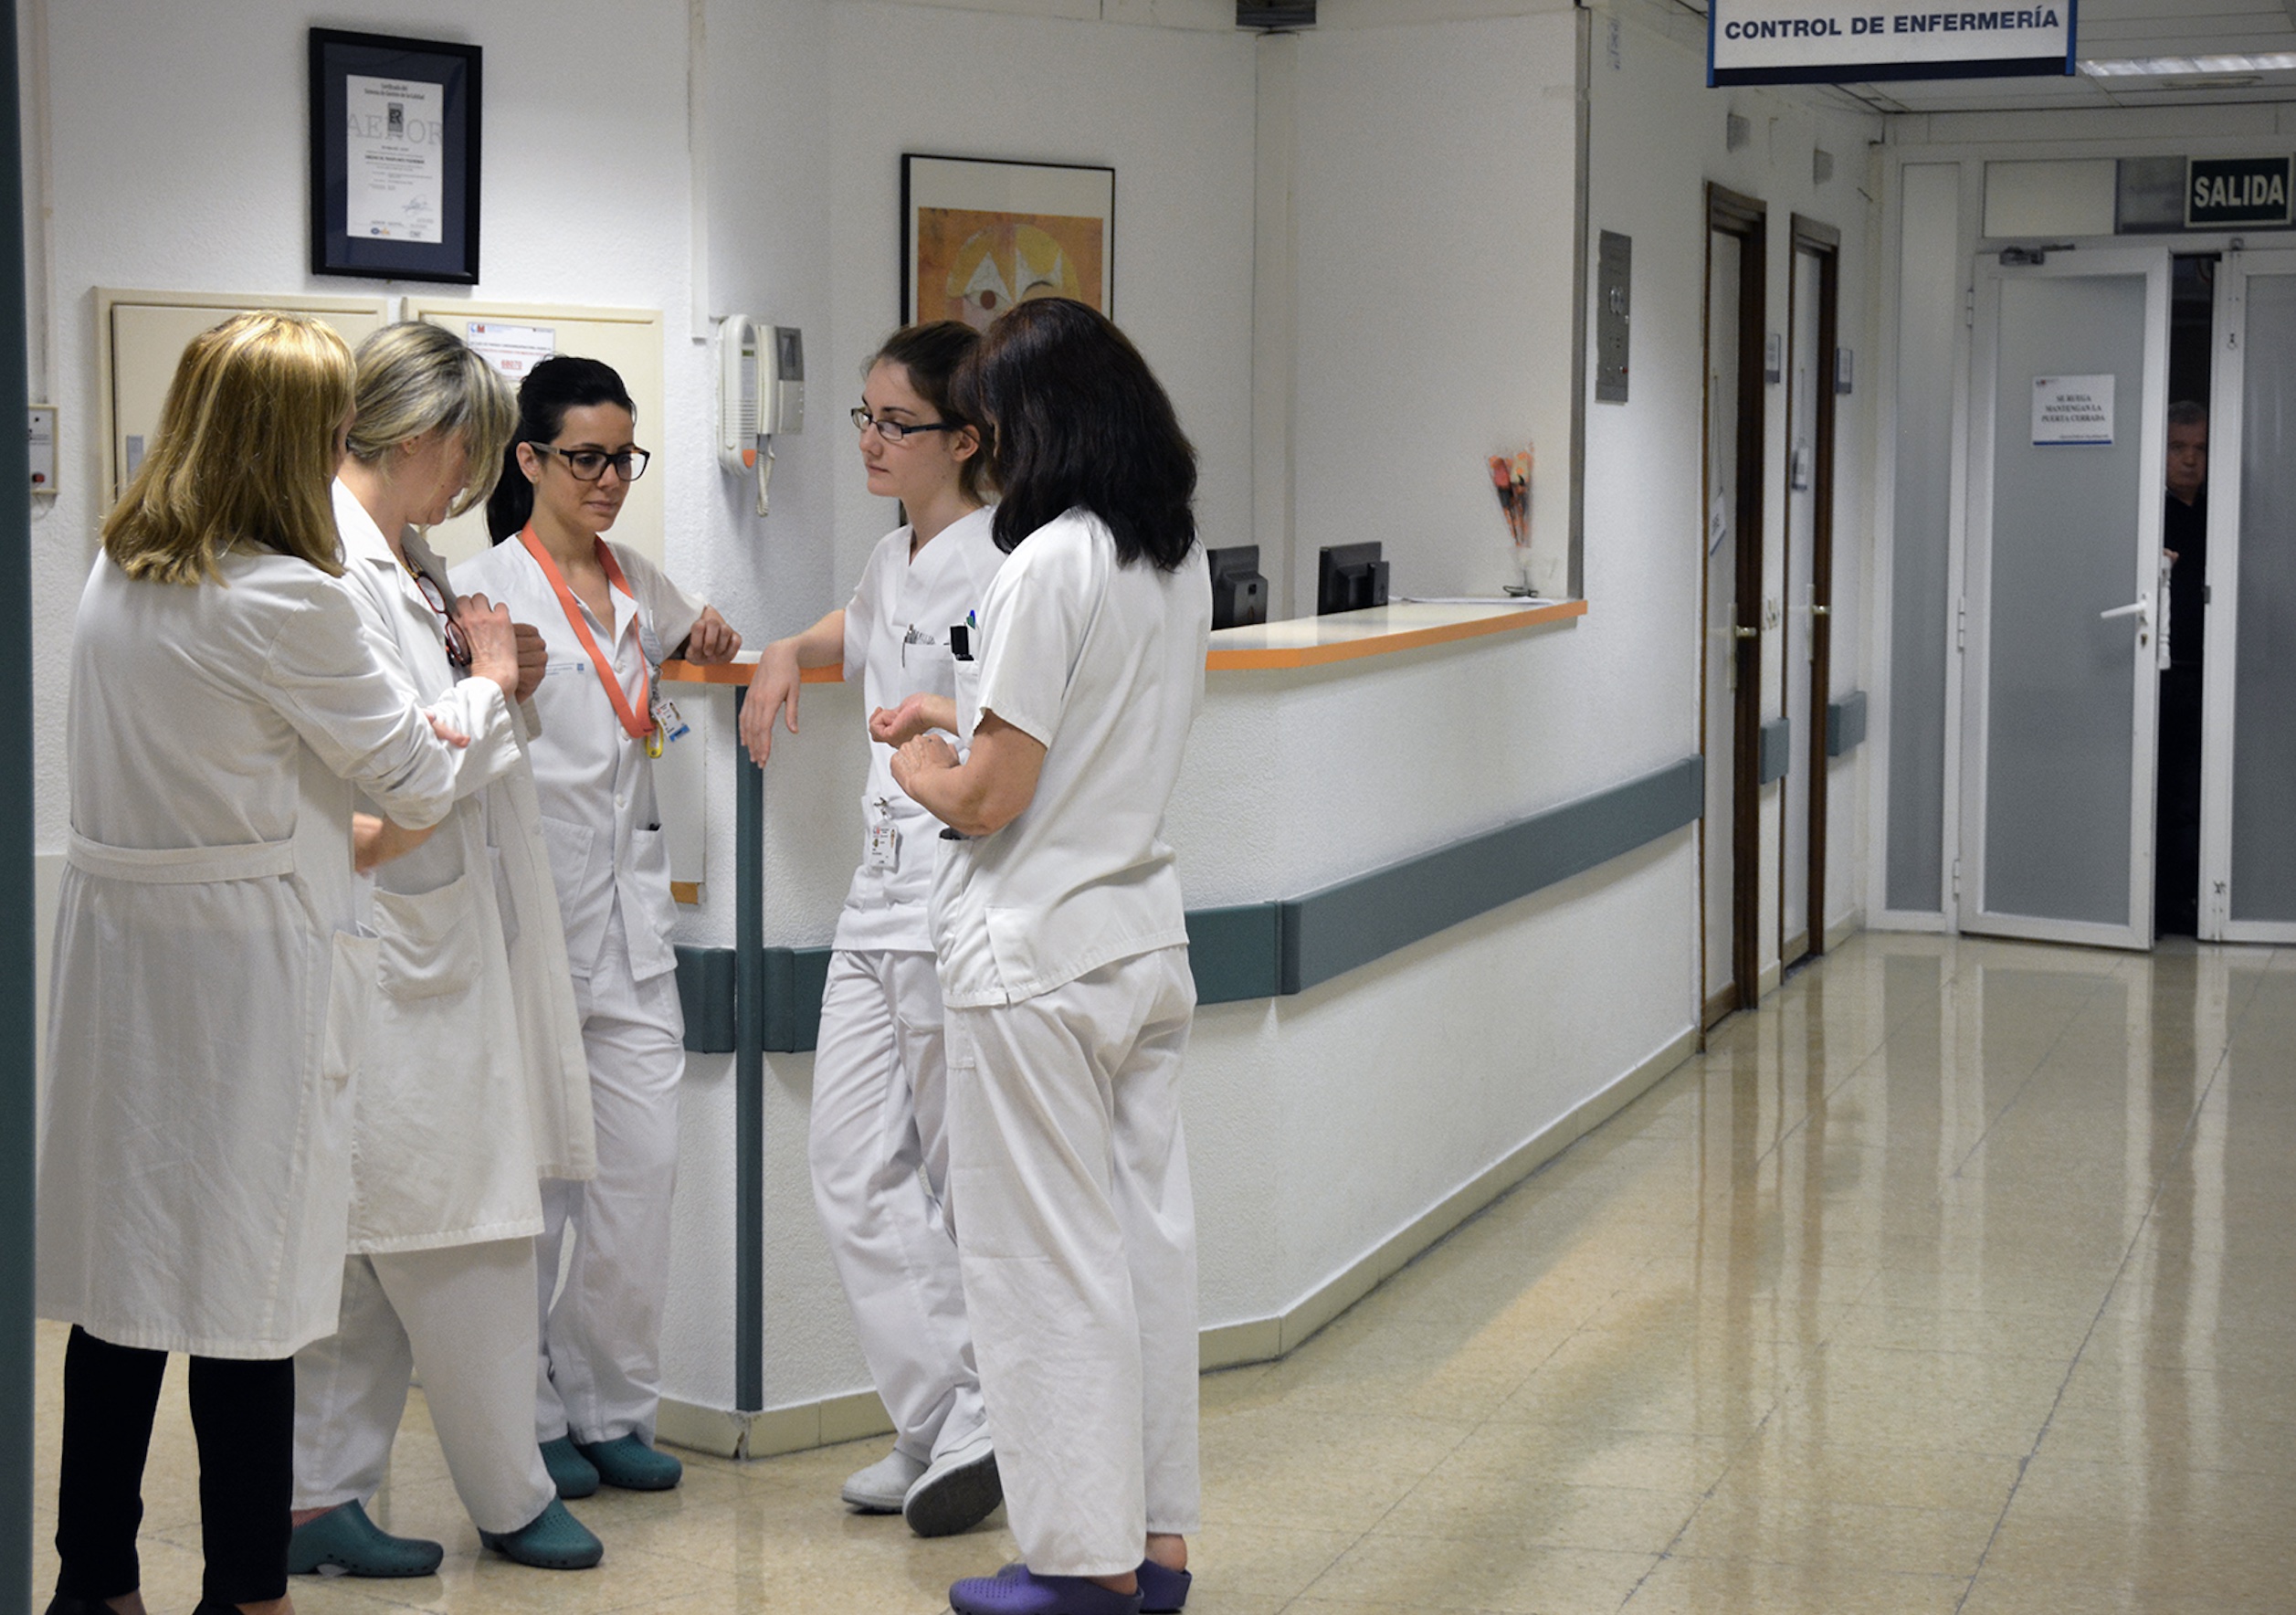 Enfermeras en busca de estabilidad: “Ninguna de nosotras se siente valorada como le gustaría”